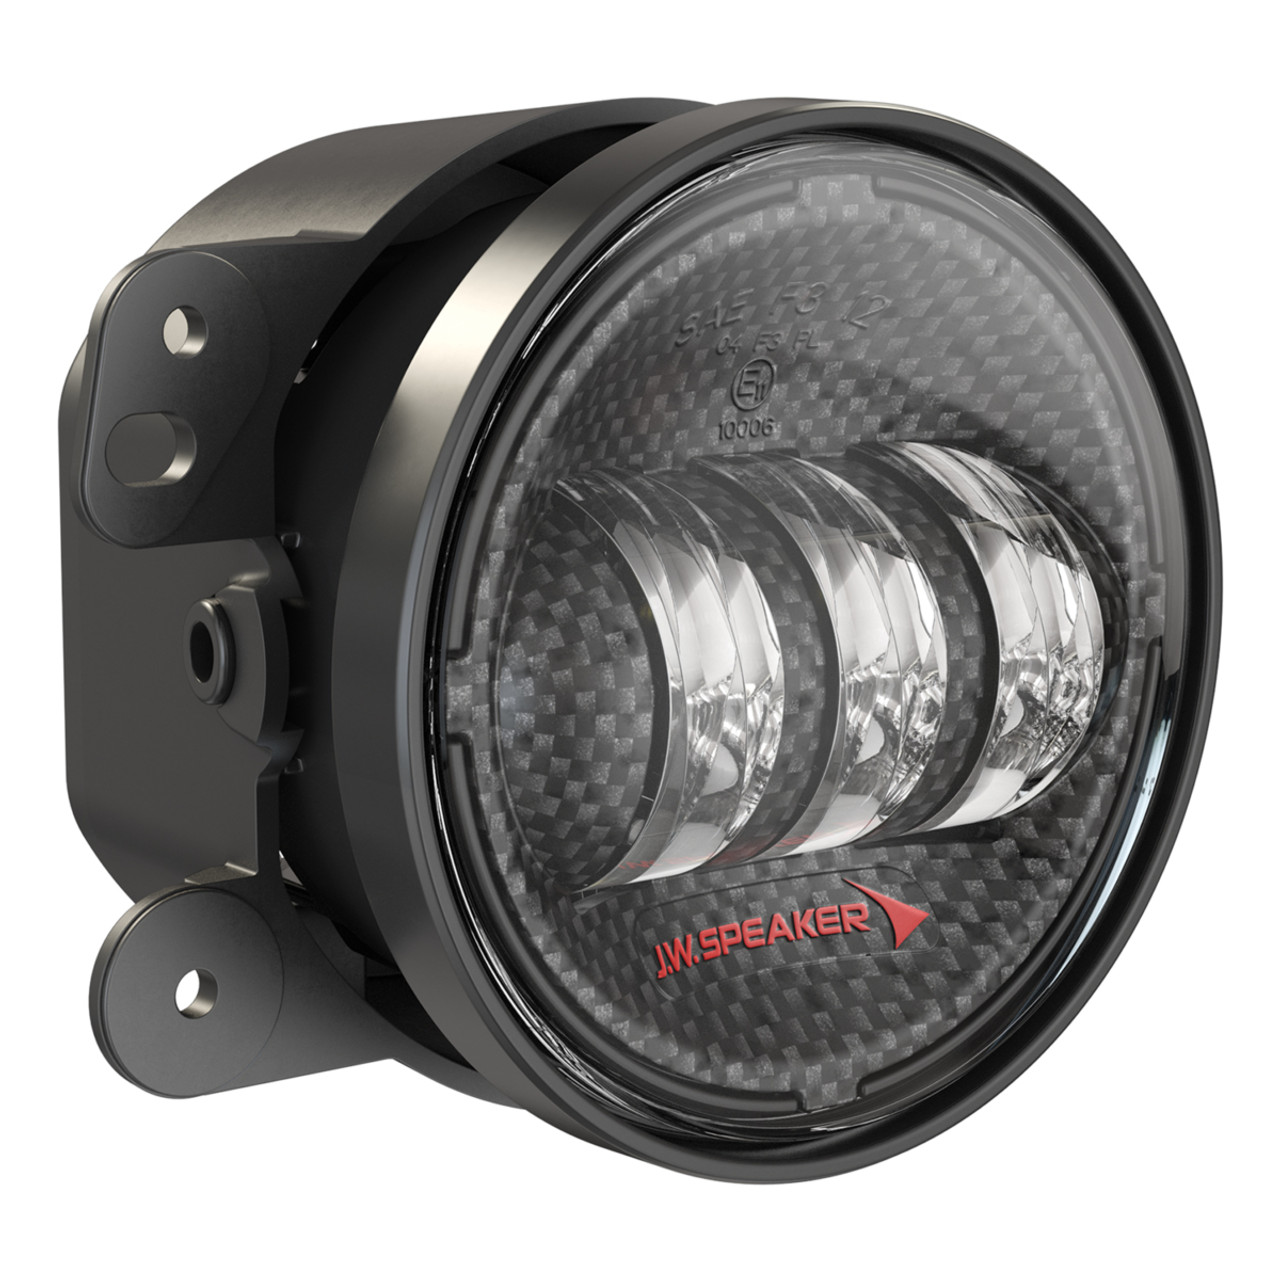 J.W. Speaker 8790 Adaptive 2 7" Round LED Headlight (Black or Carbon Fiber Inner Bezel)